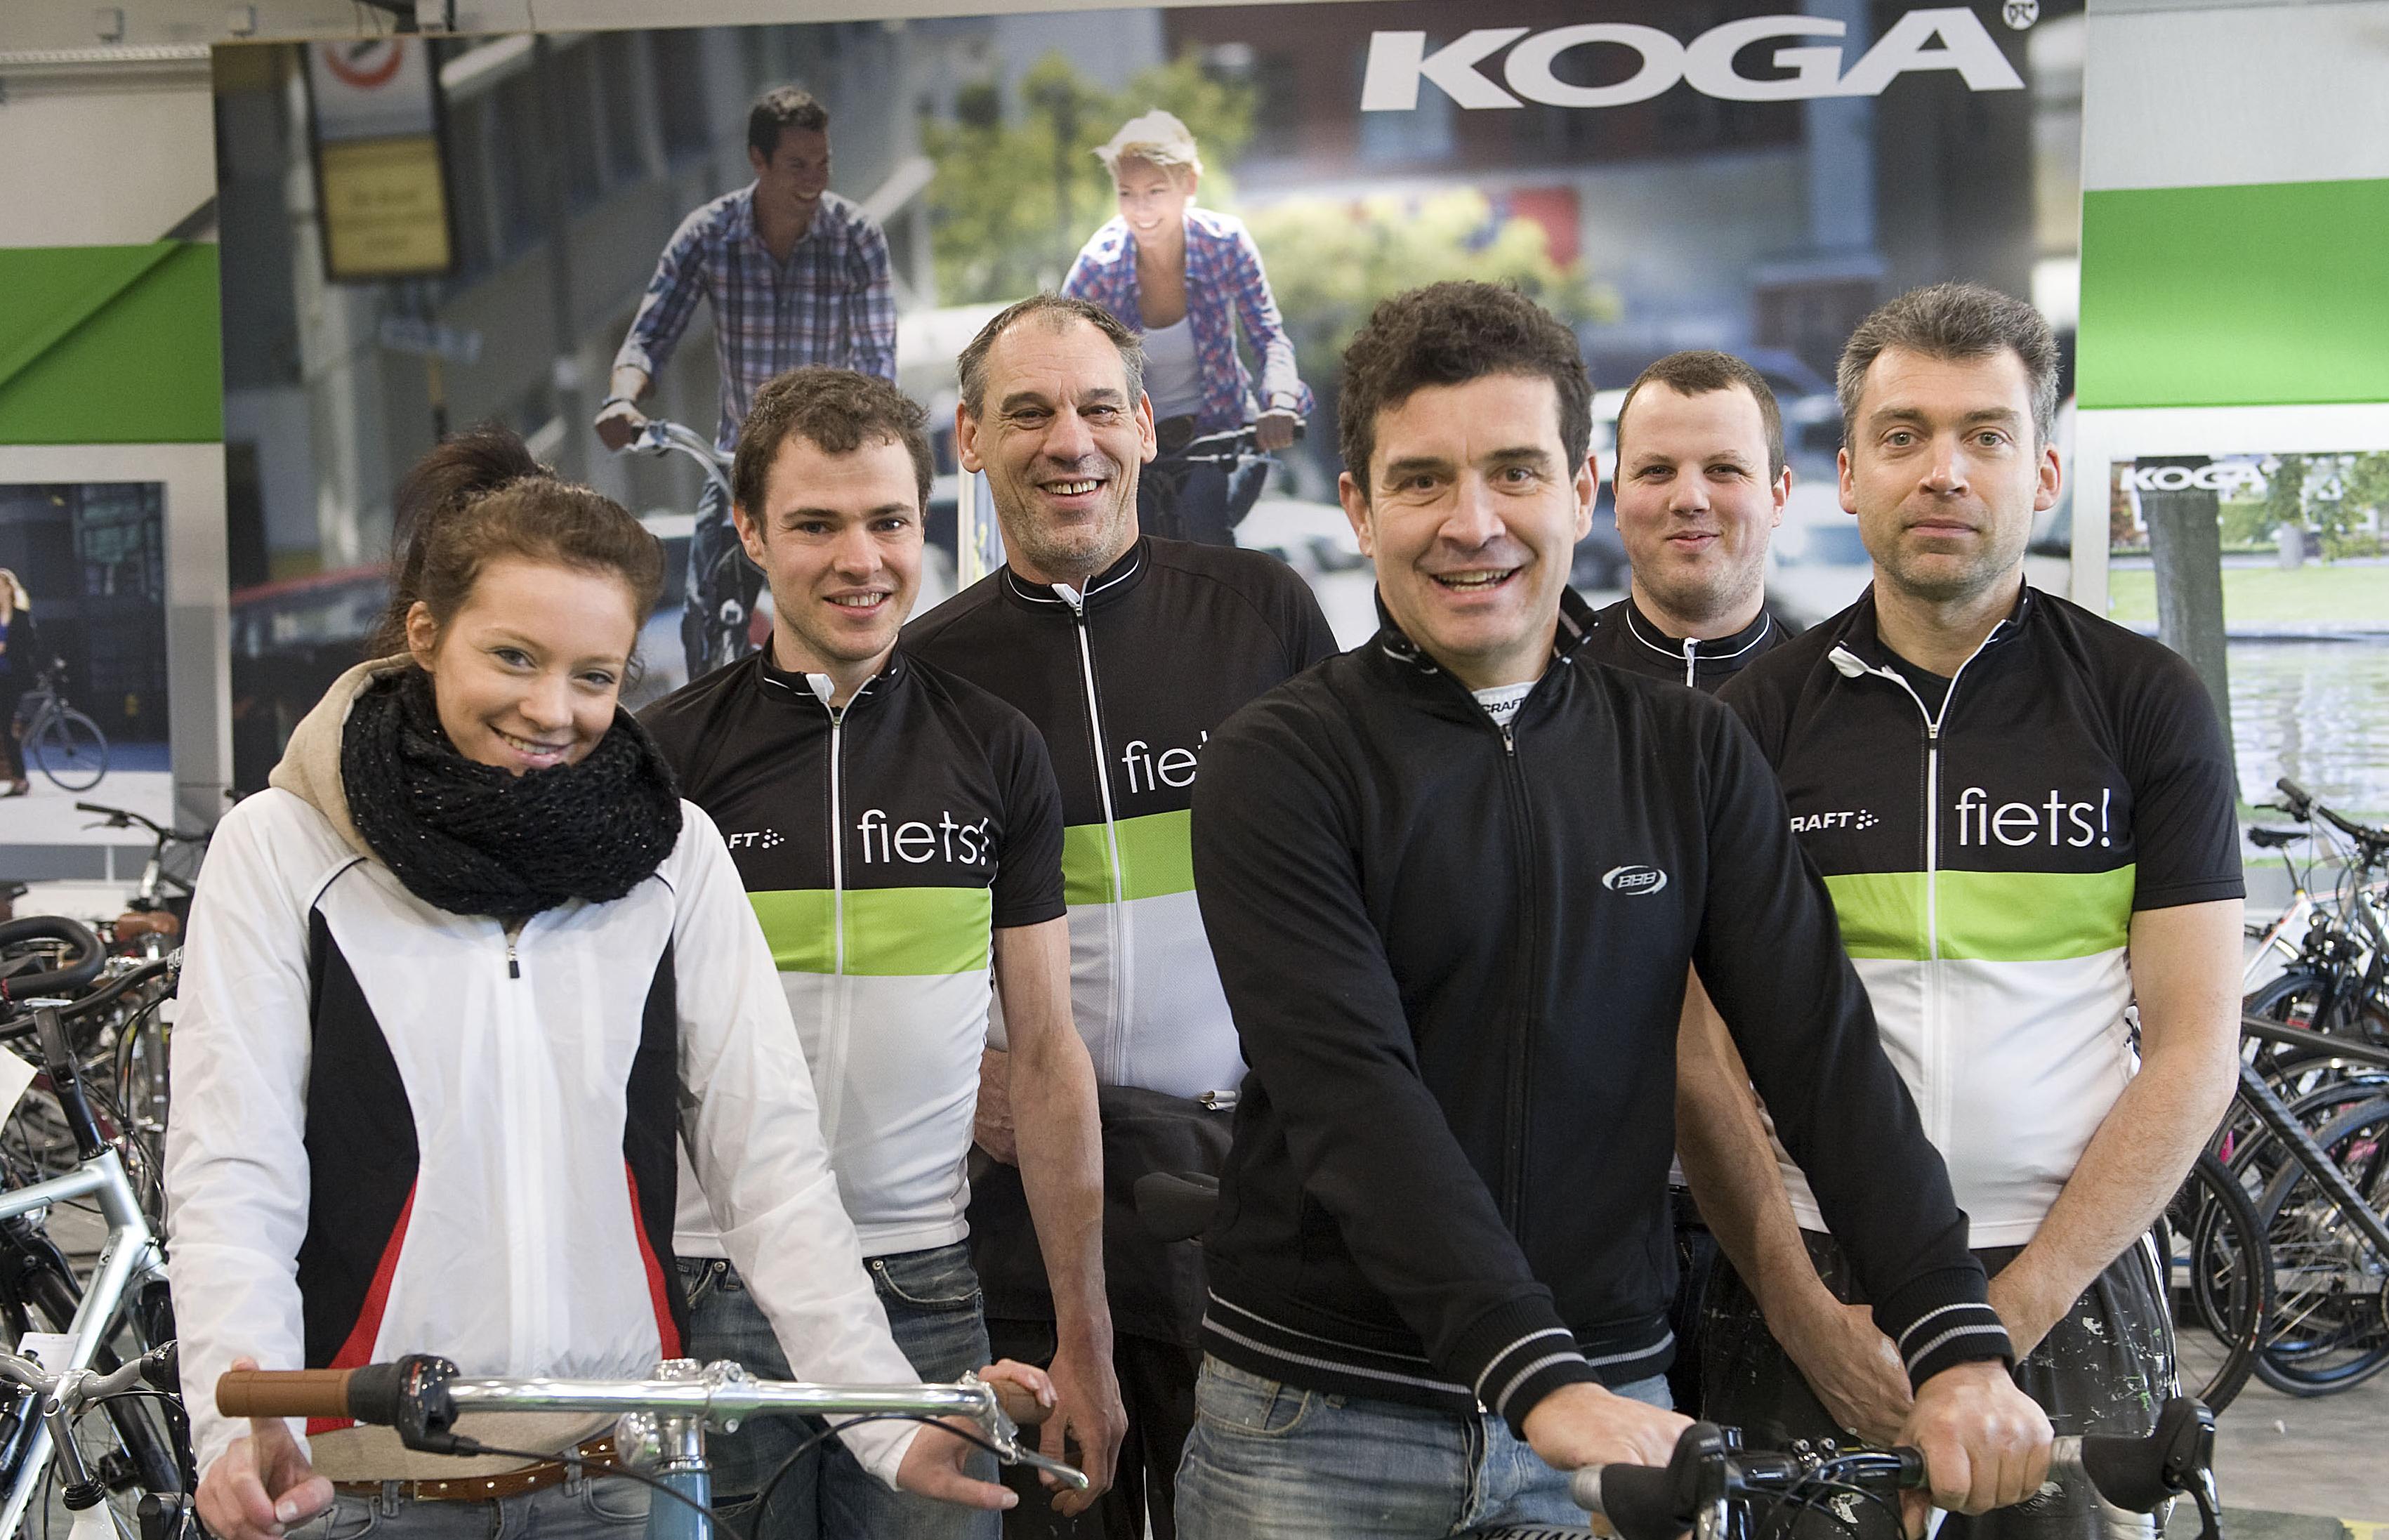 formaat Regan Consumeren Grootste fietsenwinkel van het land, voor even toch (Roeselare) | Het  Nieuwsblad Mobile